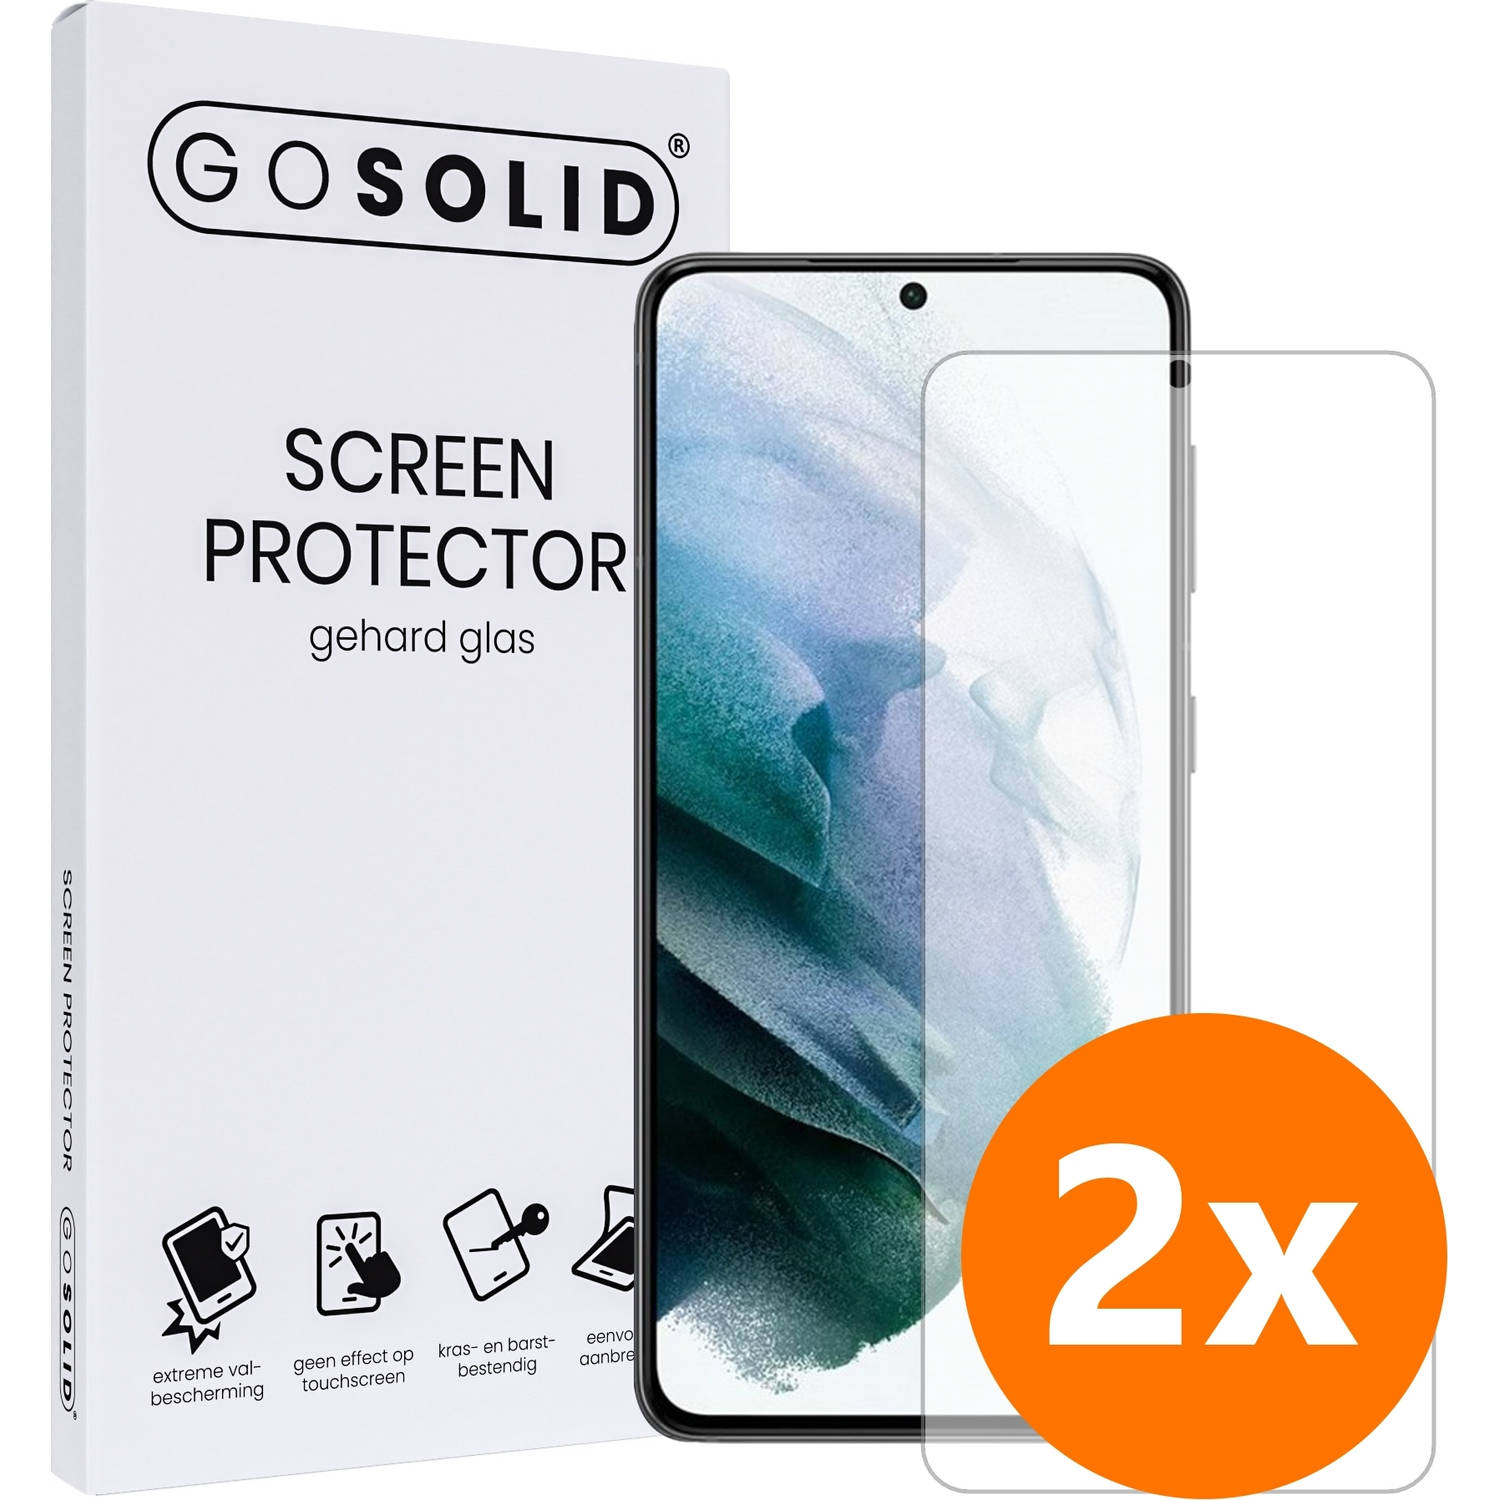 GO SOLID! Screenprotector voor Oppo Reno 8 Pro Plus gehard glas - Duopack